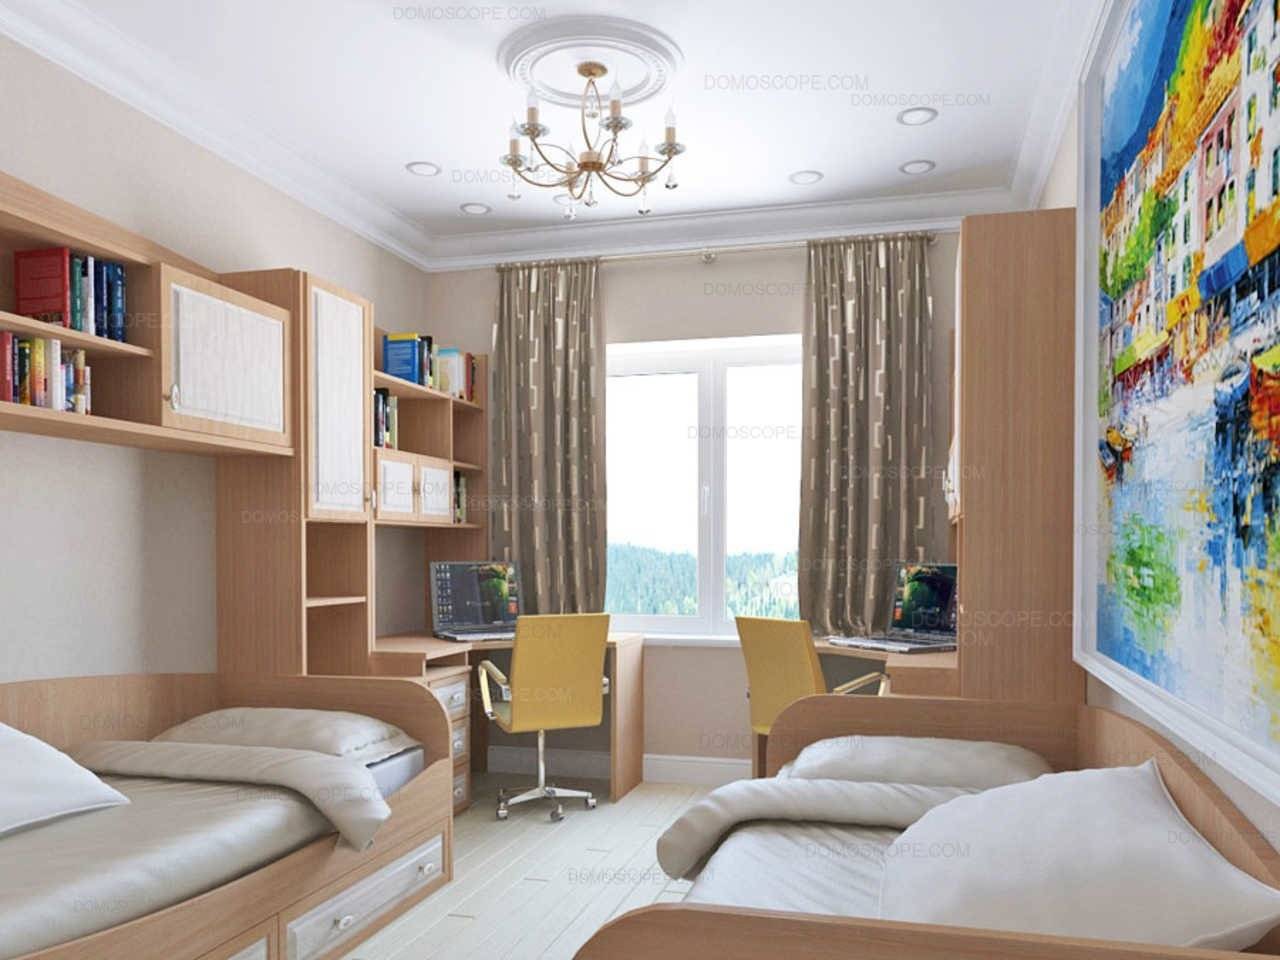 Дизайн детской комнаты в хрущевке (45 фото) | онлайн-журнал о ремонте и дизайне